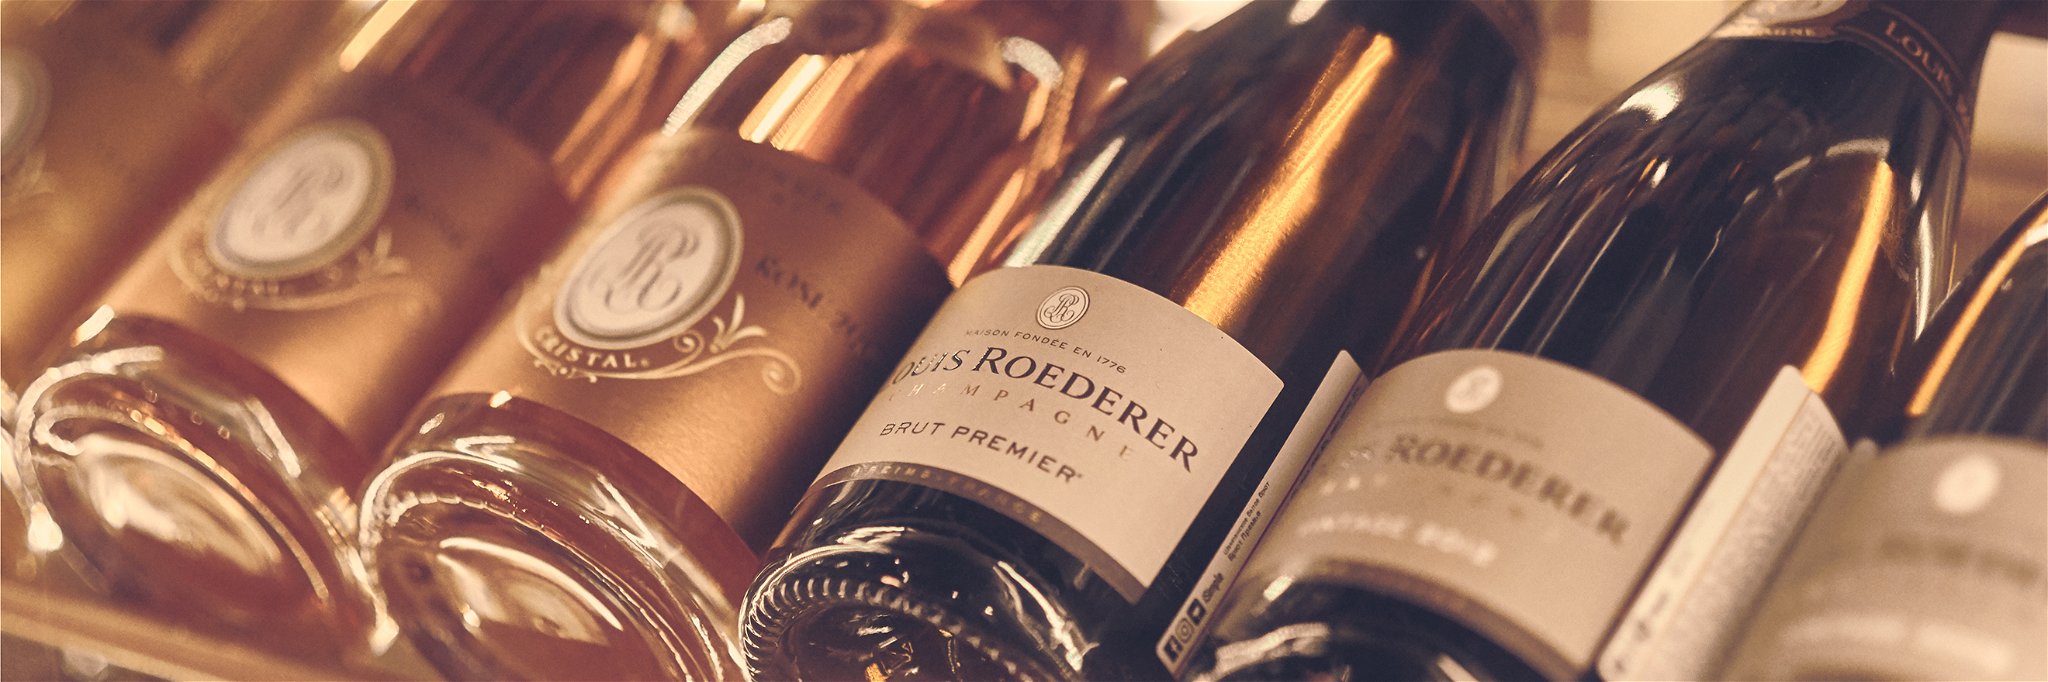 Louis Roederer gilt als Pionier in Sachen Bio-Weinbau in der Champagne.